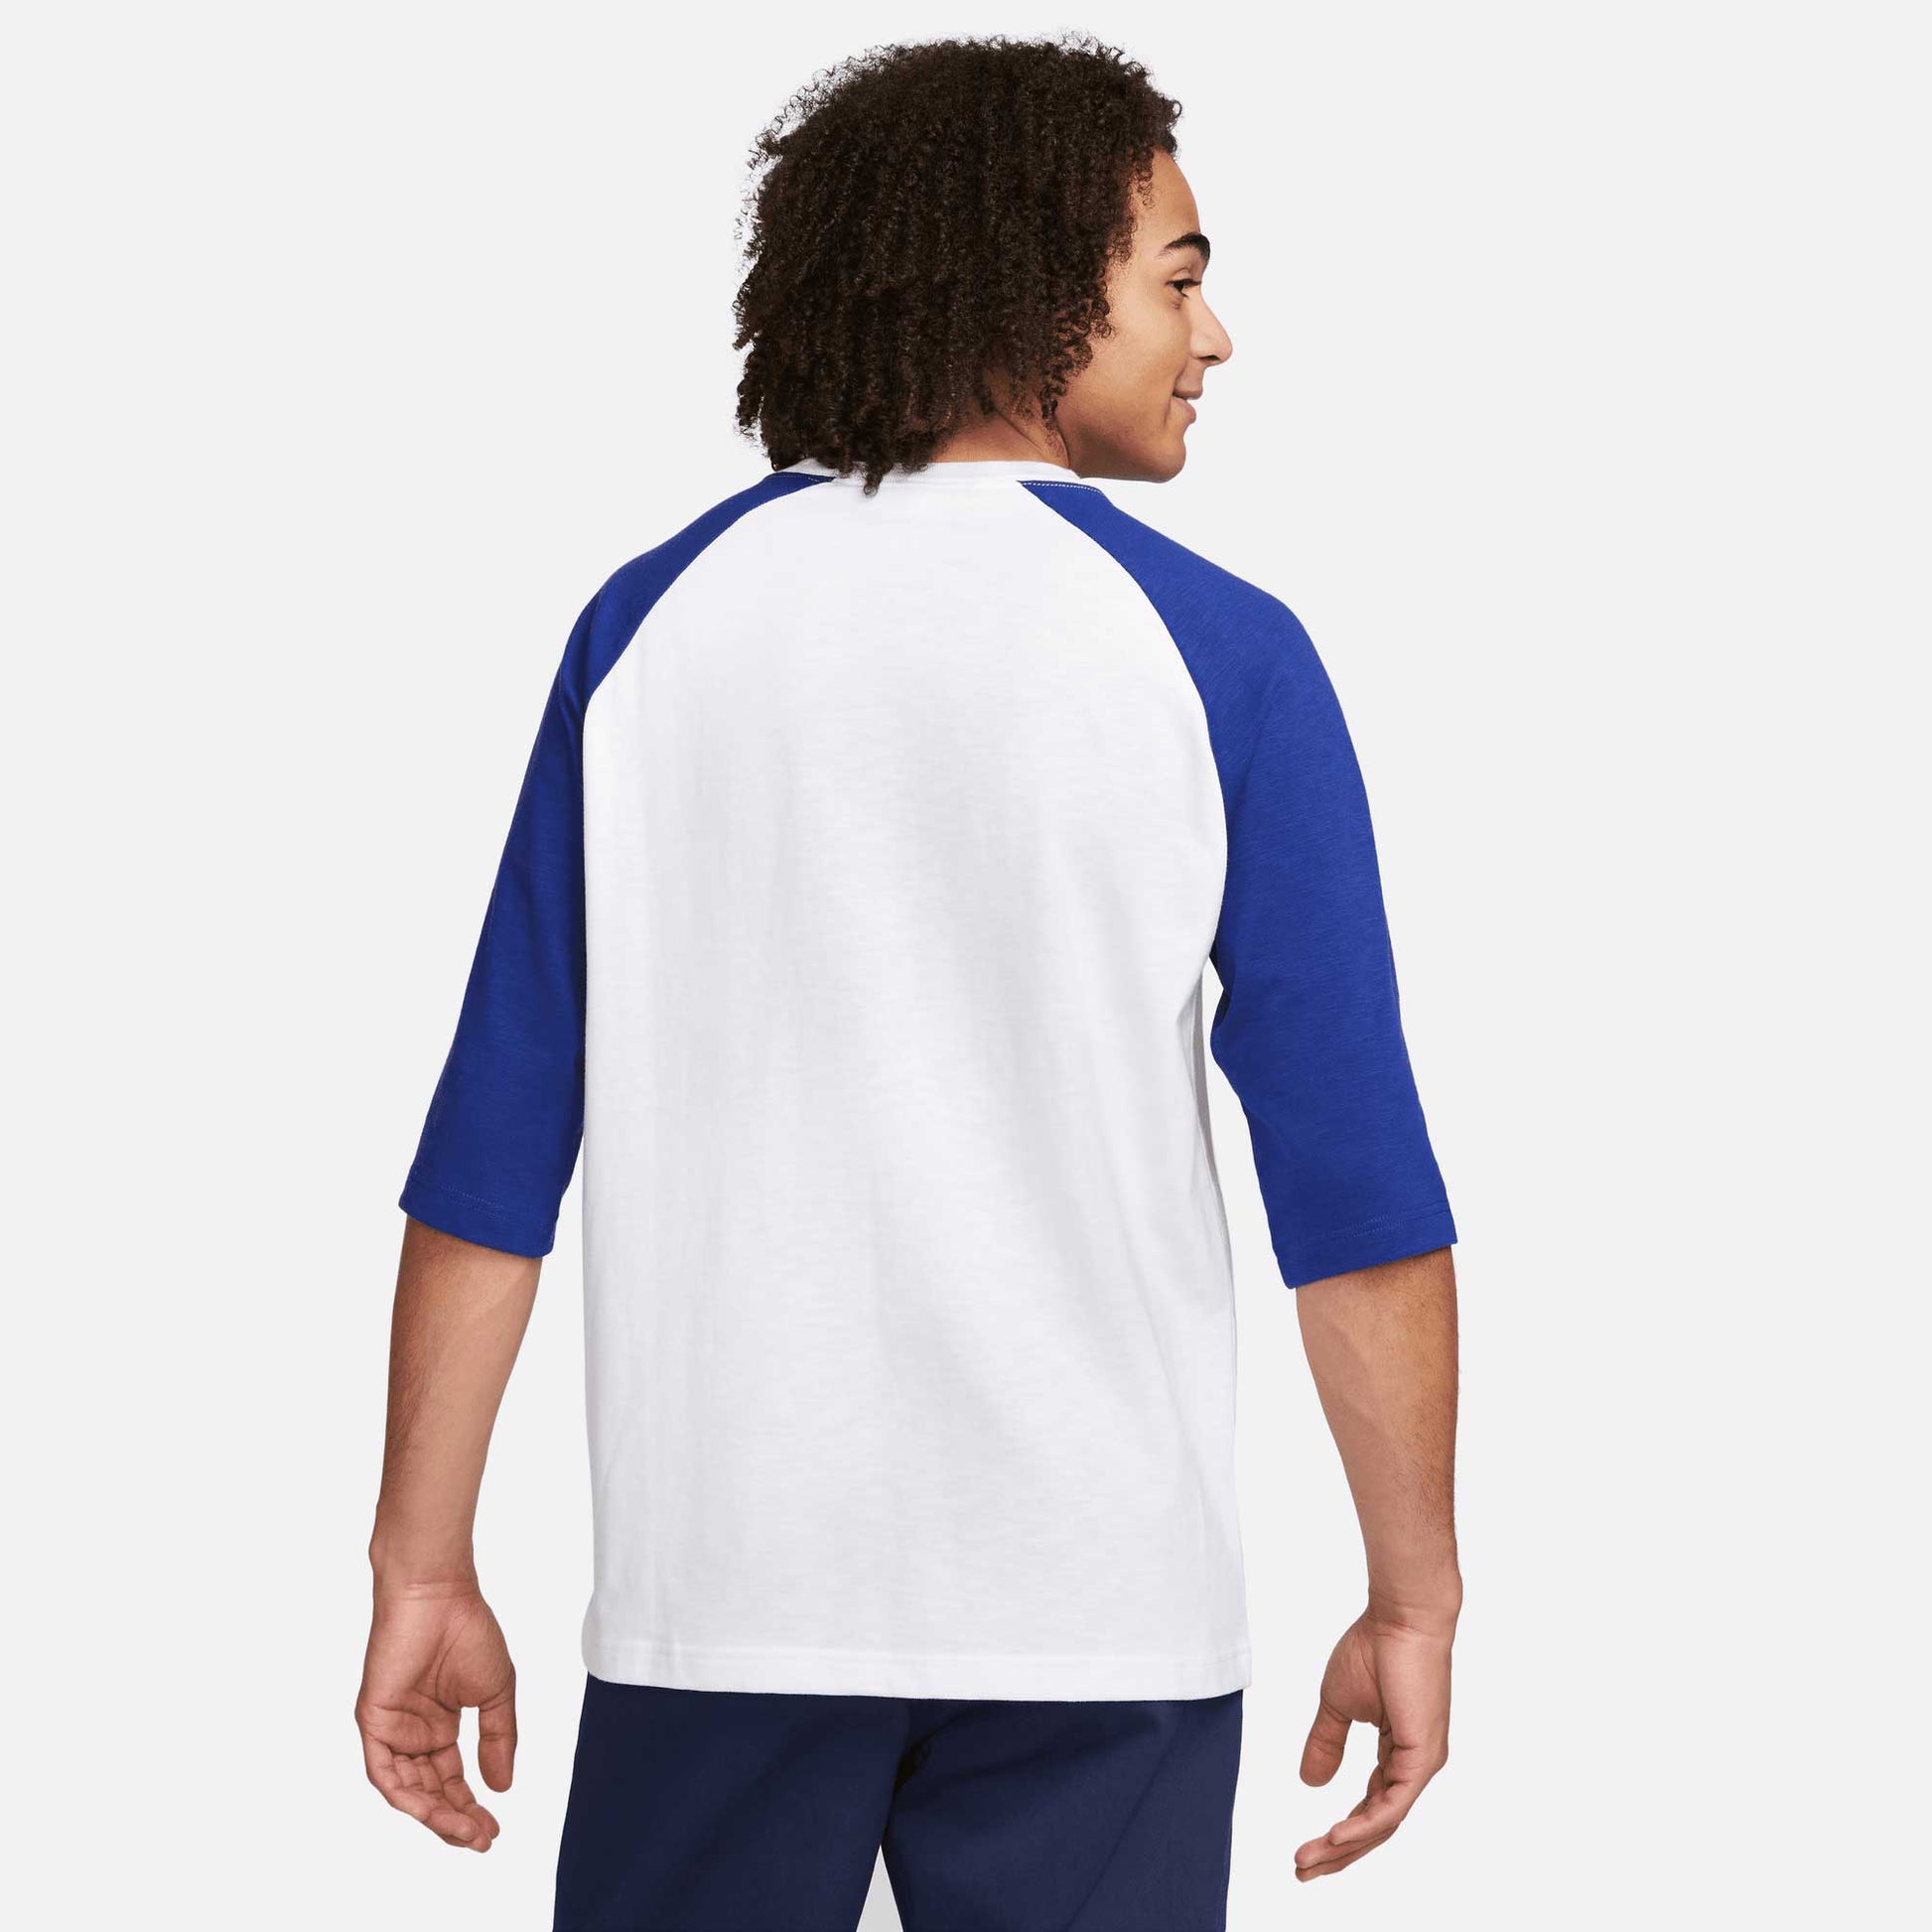 Nike SB Raglan Skate T-Shirt, white/deep royal blue - Tiki Room Skateboards - 3